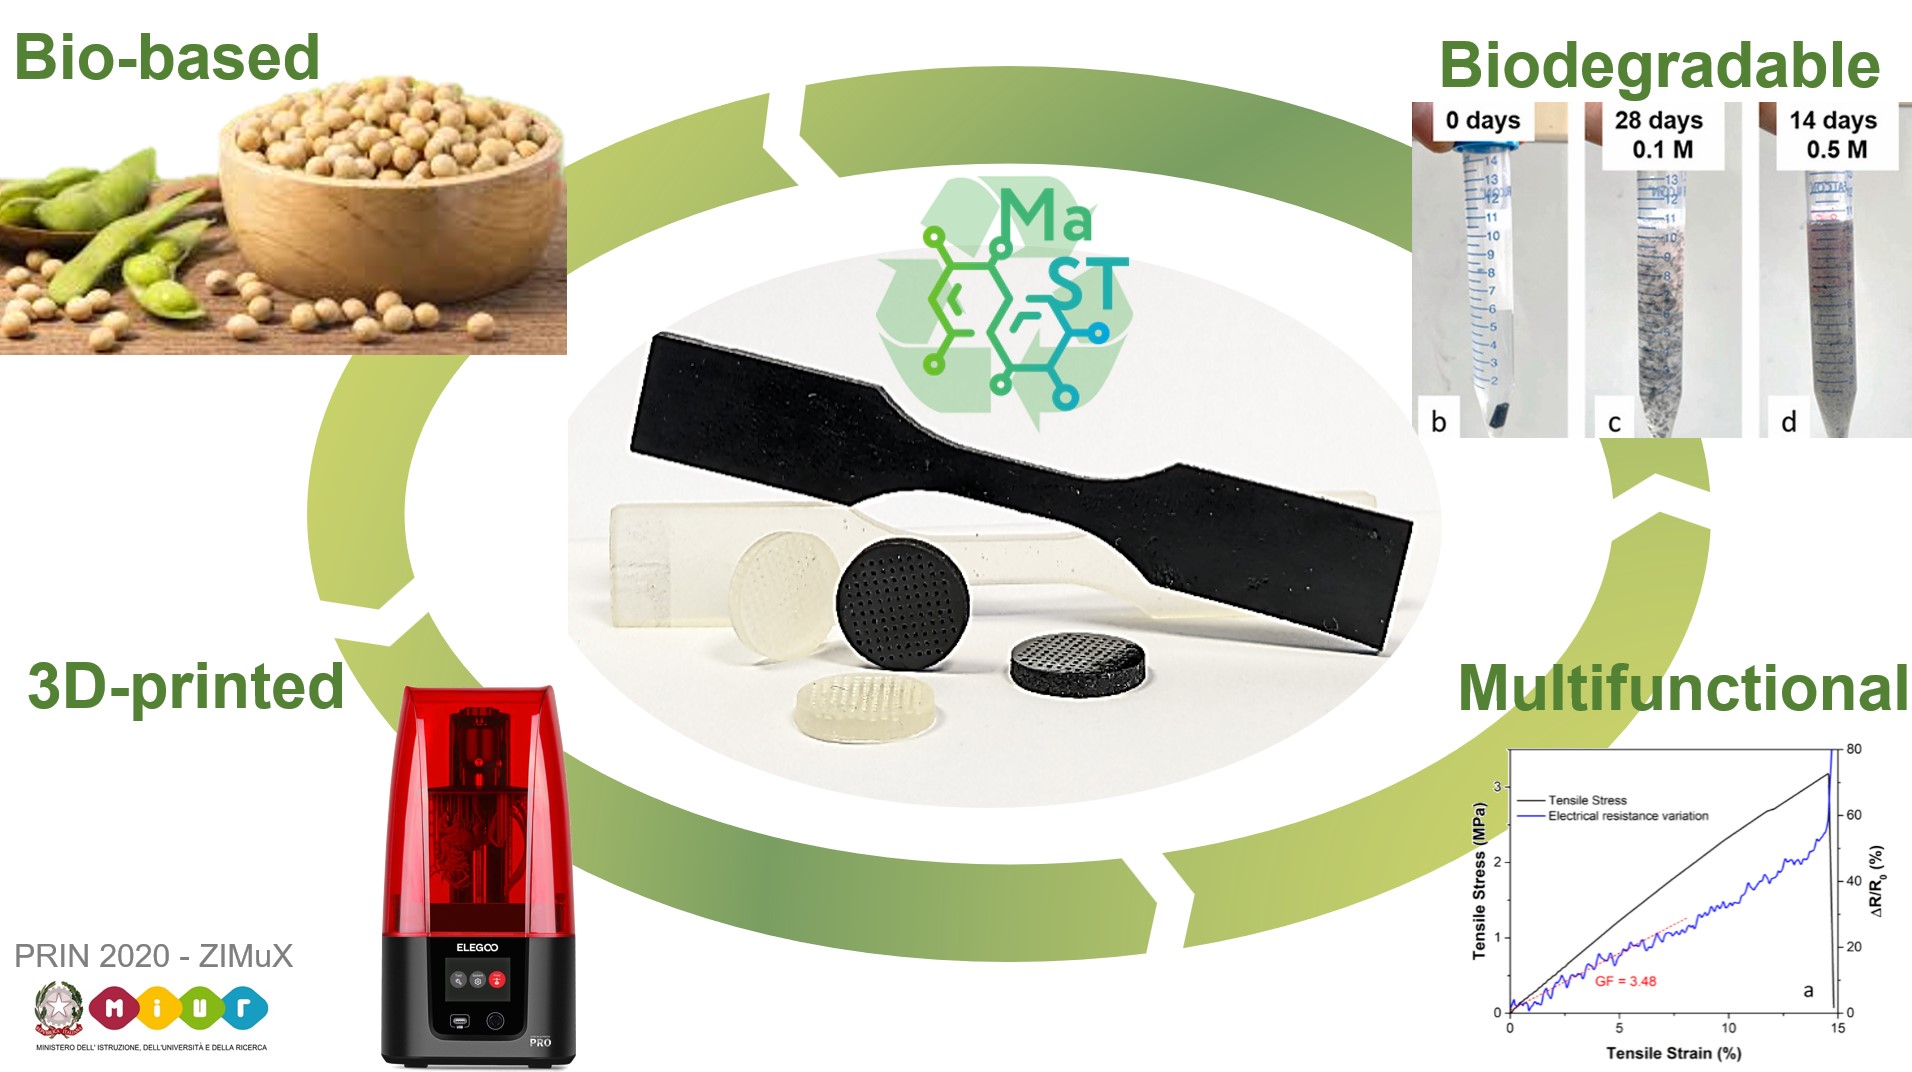 Biodegradable and self-monitoring biobased resin 3D printing